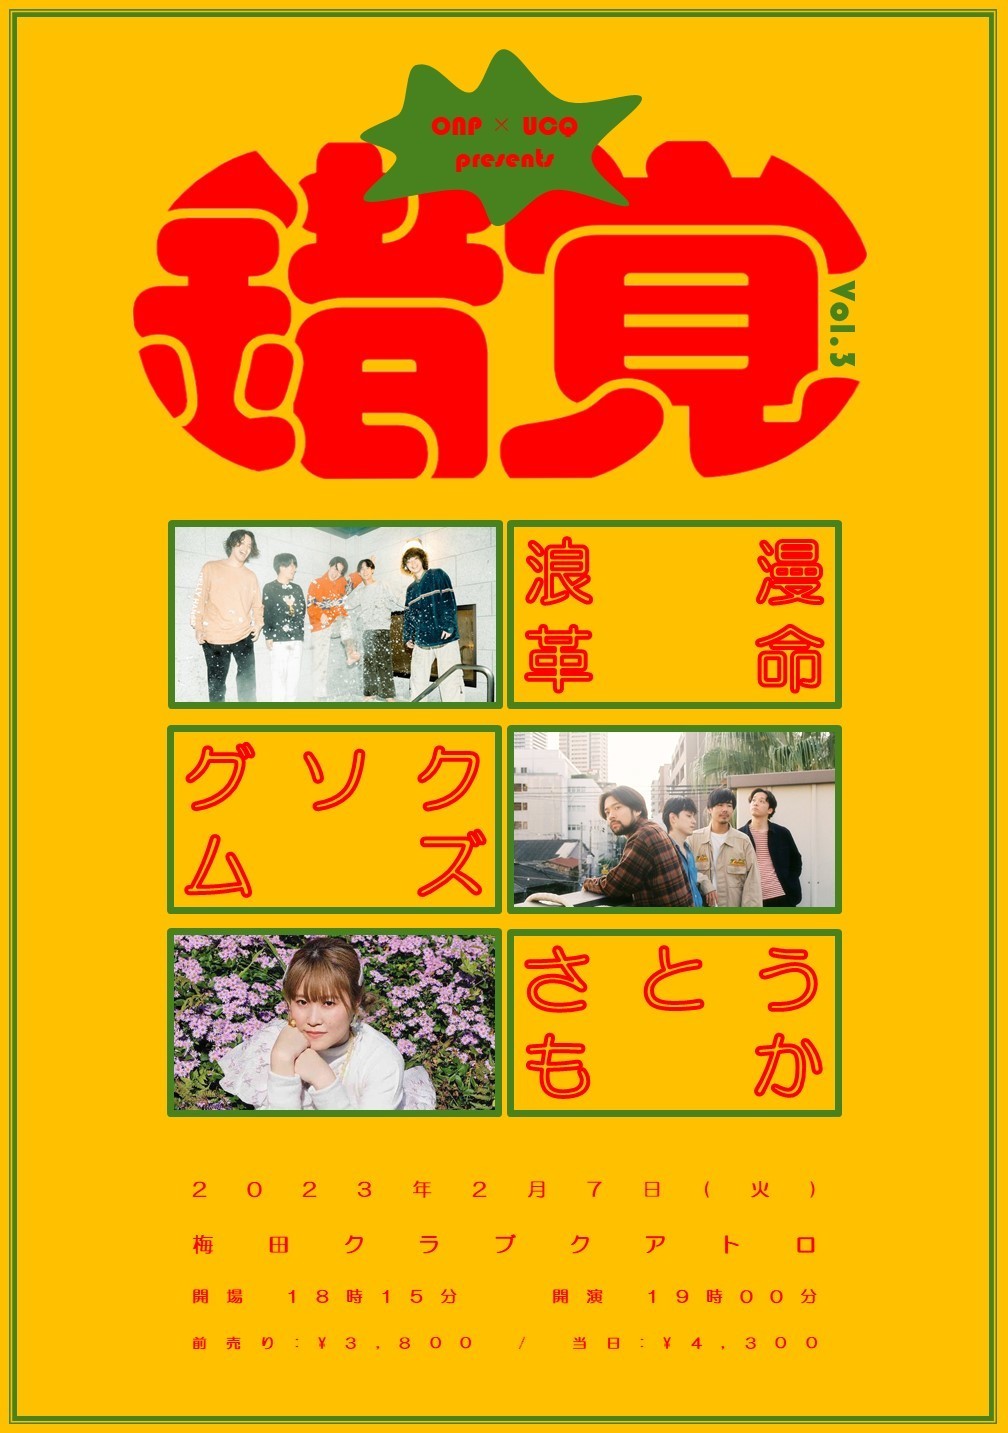 2月7日(火) 「錯覚 Vol.3」梅田CLUB QUATTRO